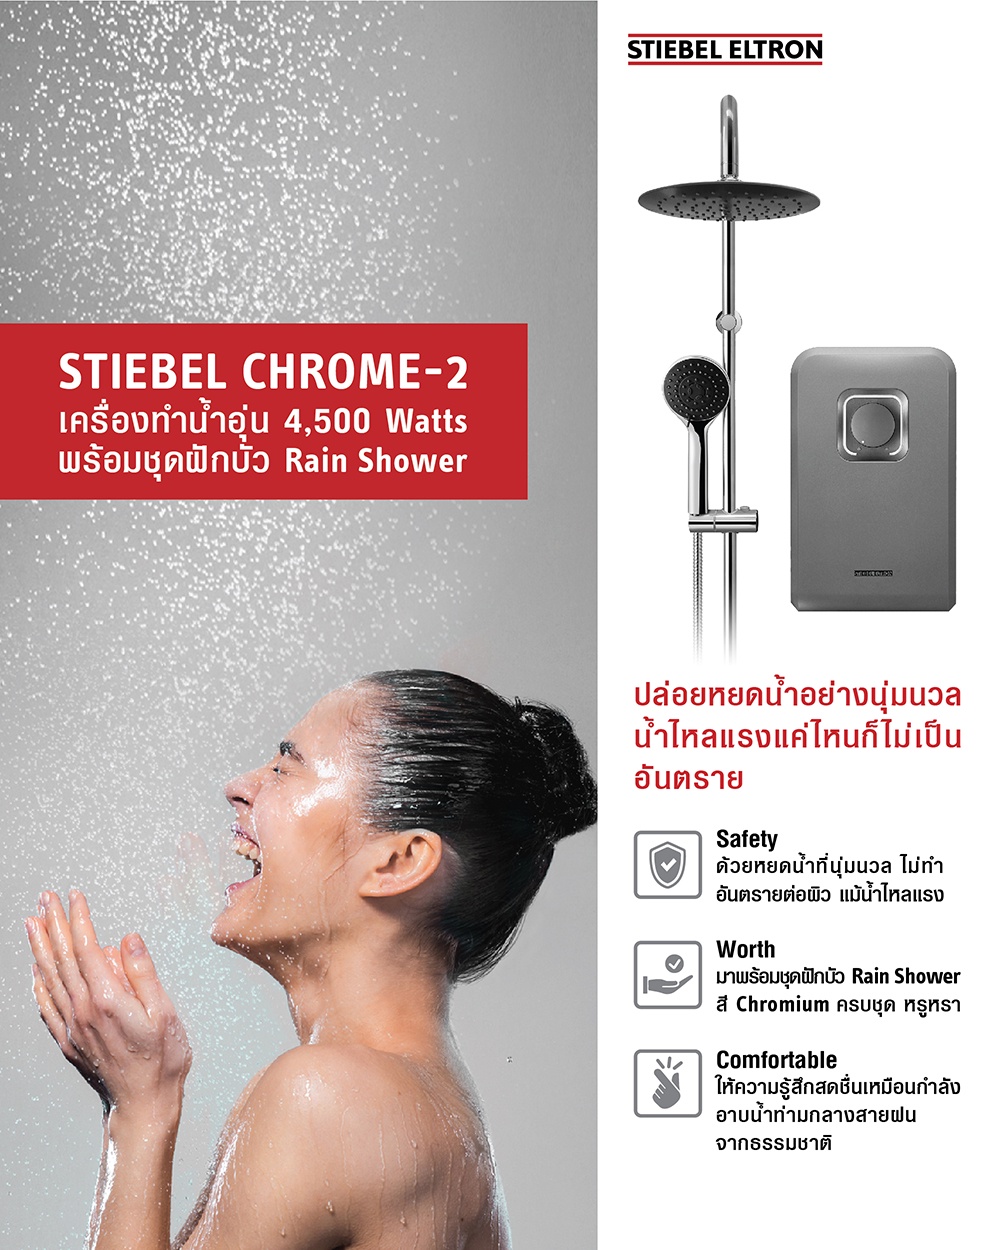 ข้อมูลเกี่ยวกับ Stiebel Eltron เครื่องทำน้ำอุ่น รุ่น STIEBEL CHROME-2